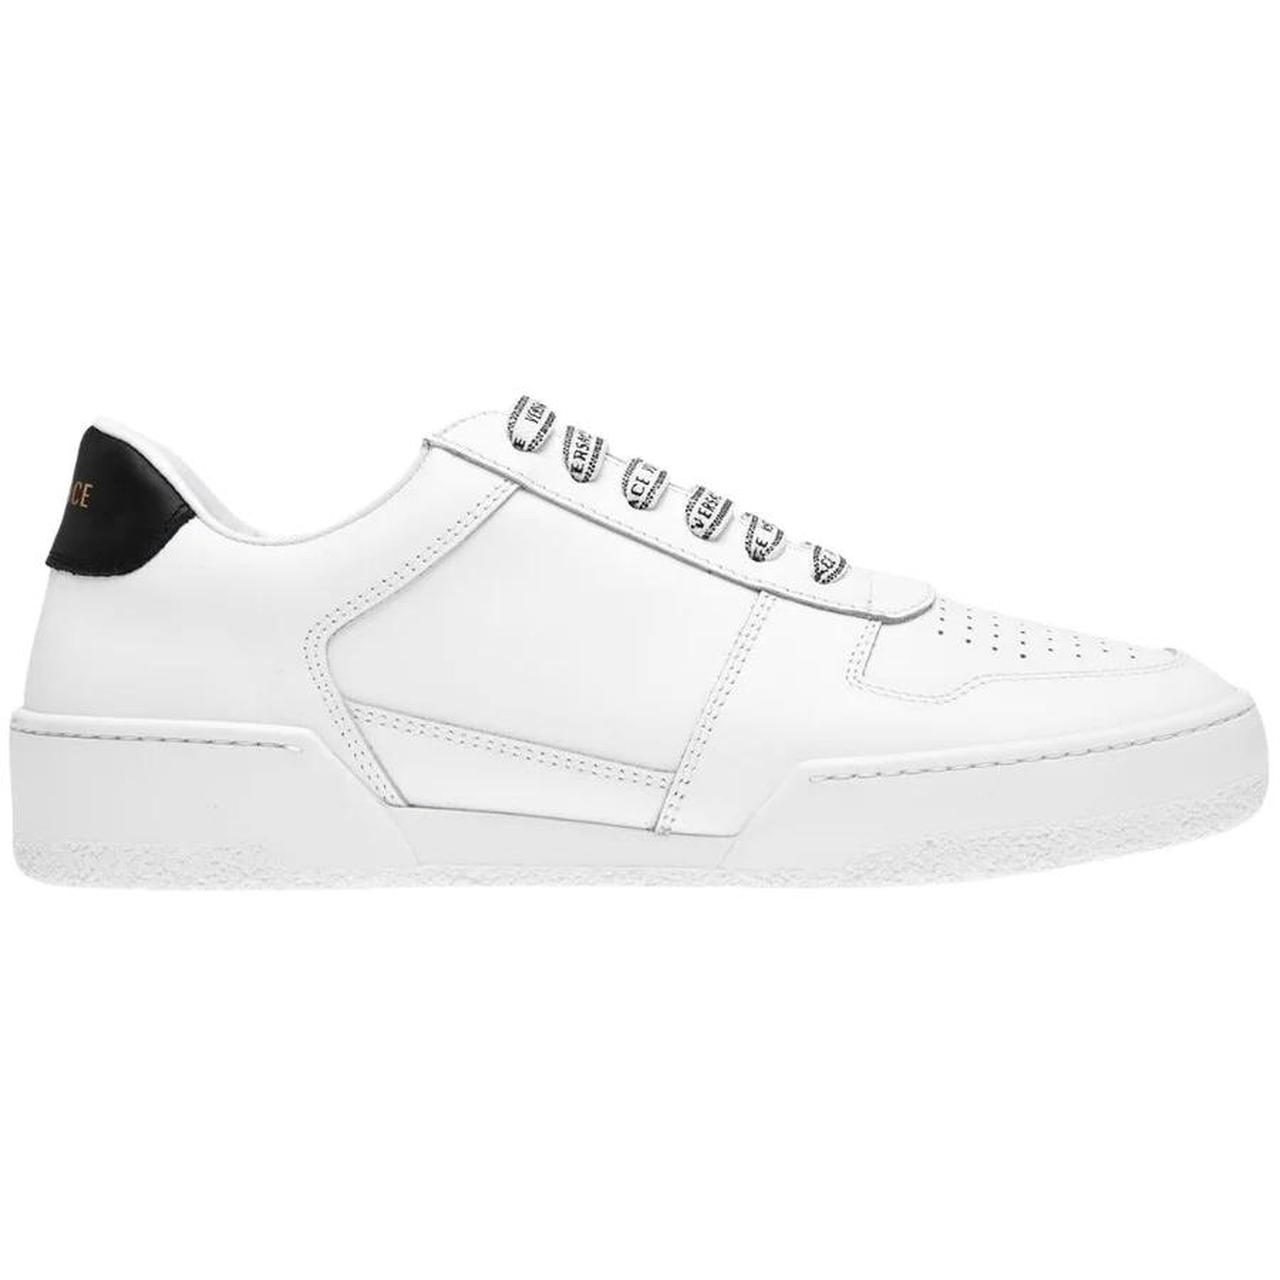 Versace Logo Black Heel White Sneakers. RRP... - Depop